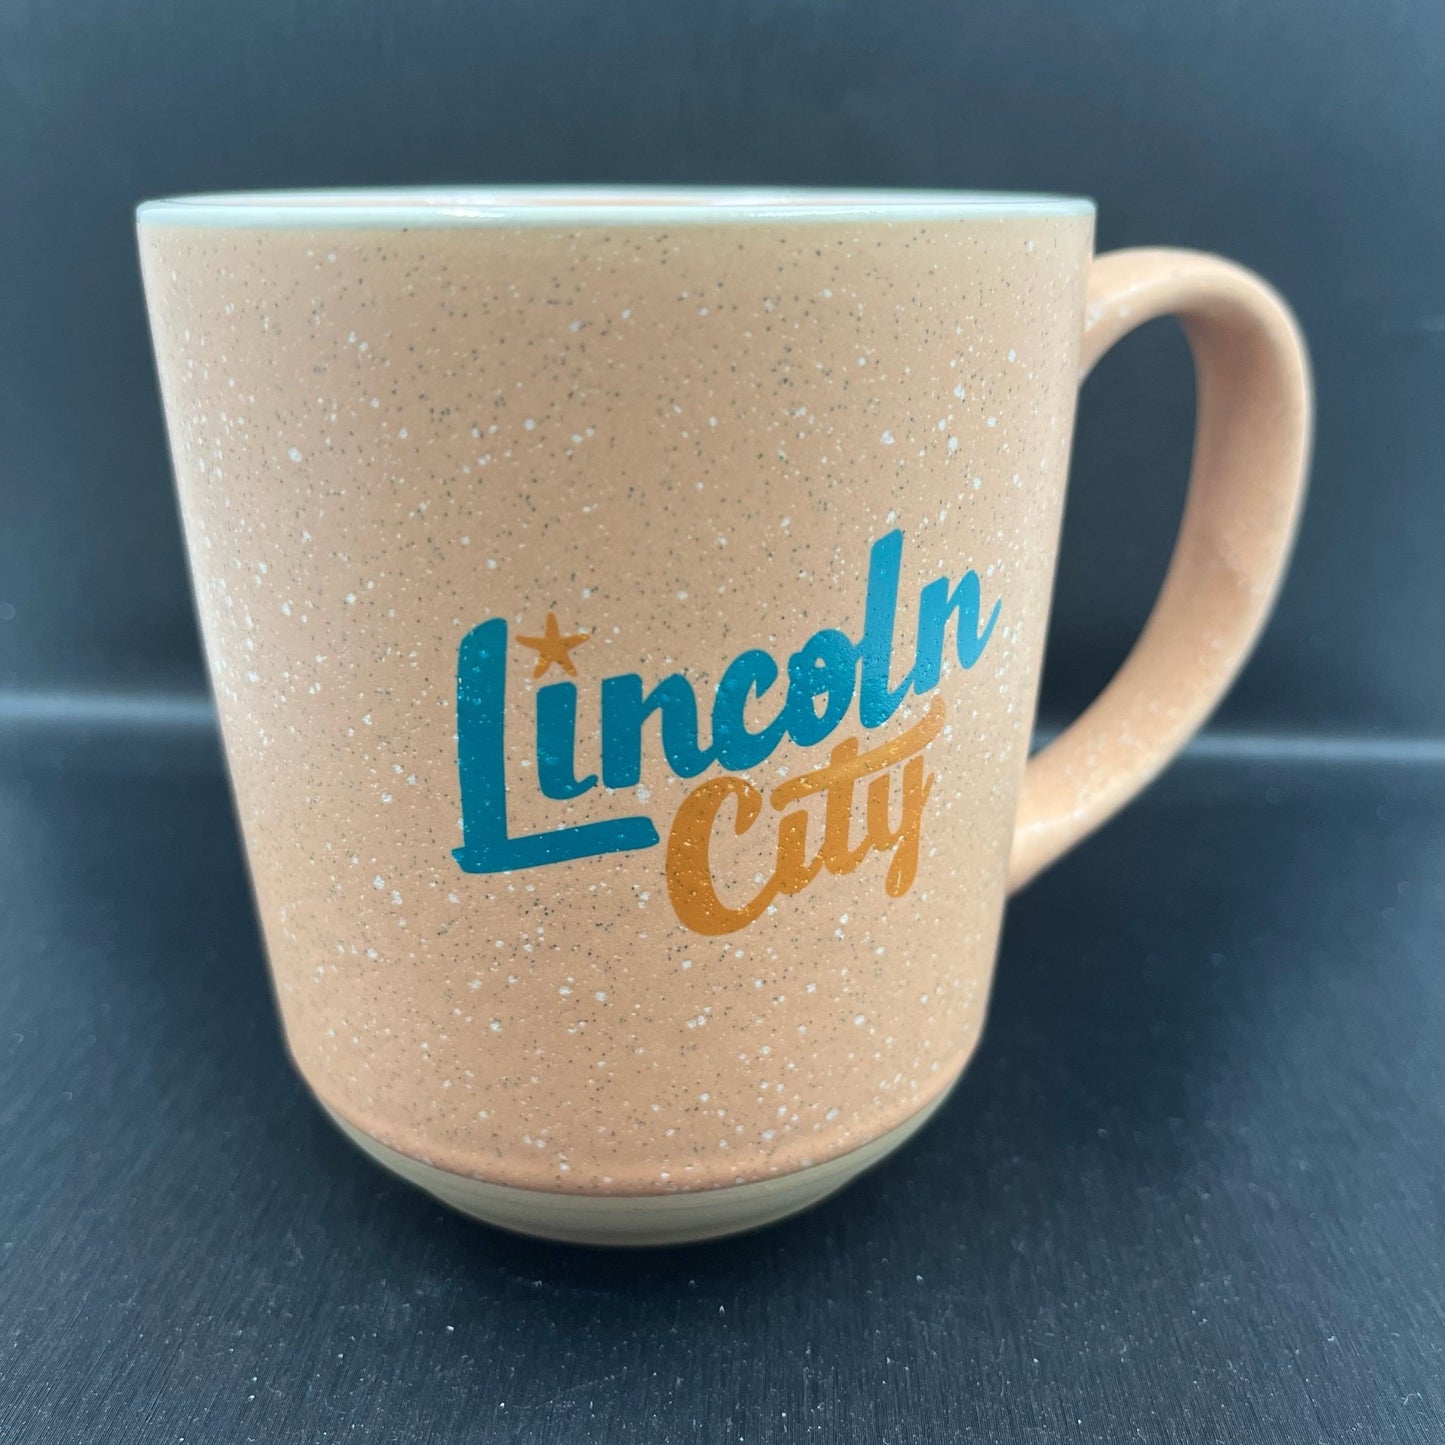 Clearance Mug - Lincoln City Peach